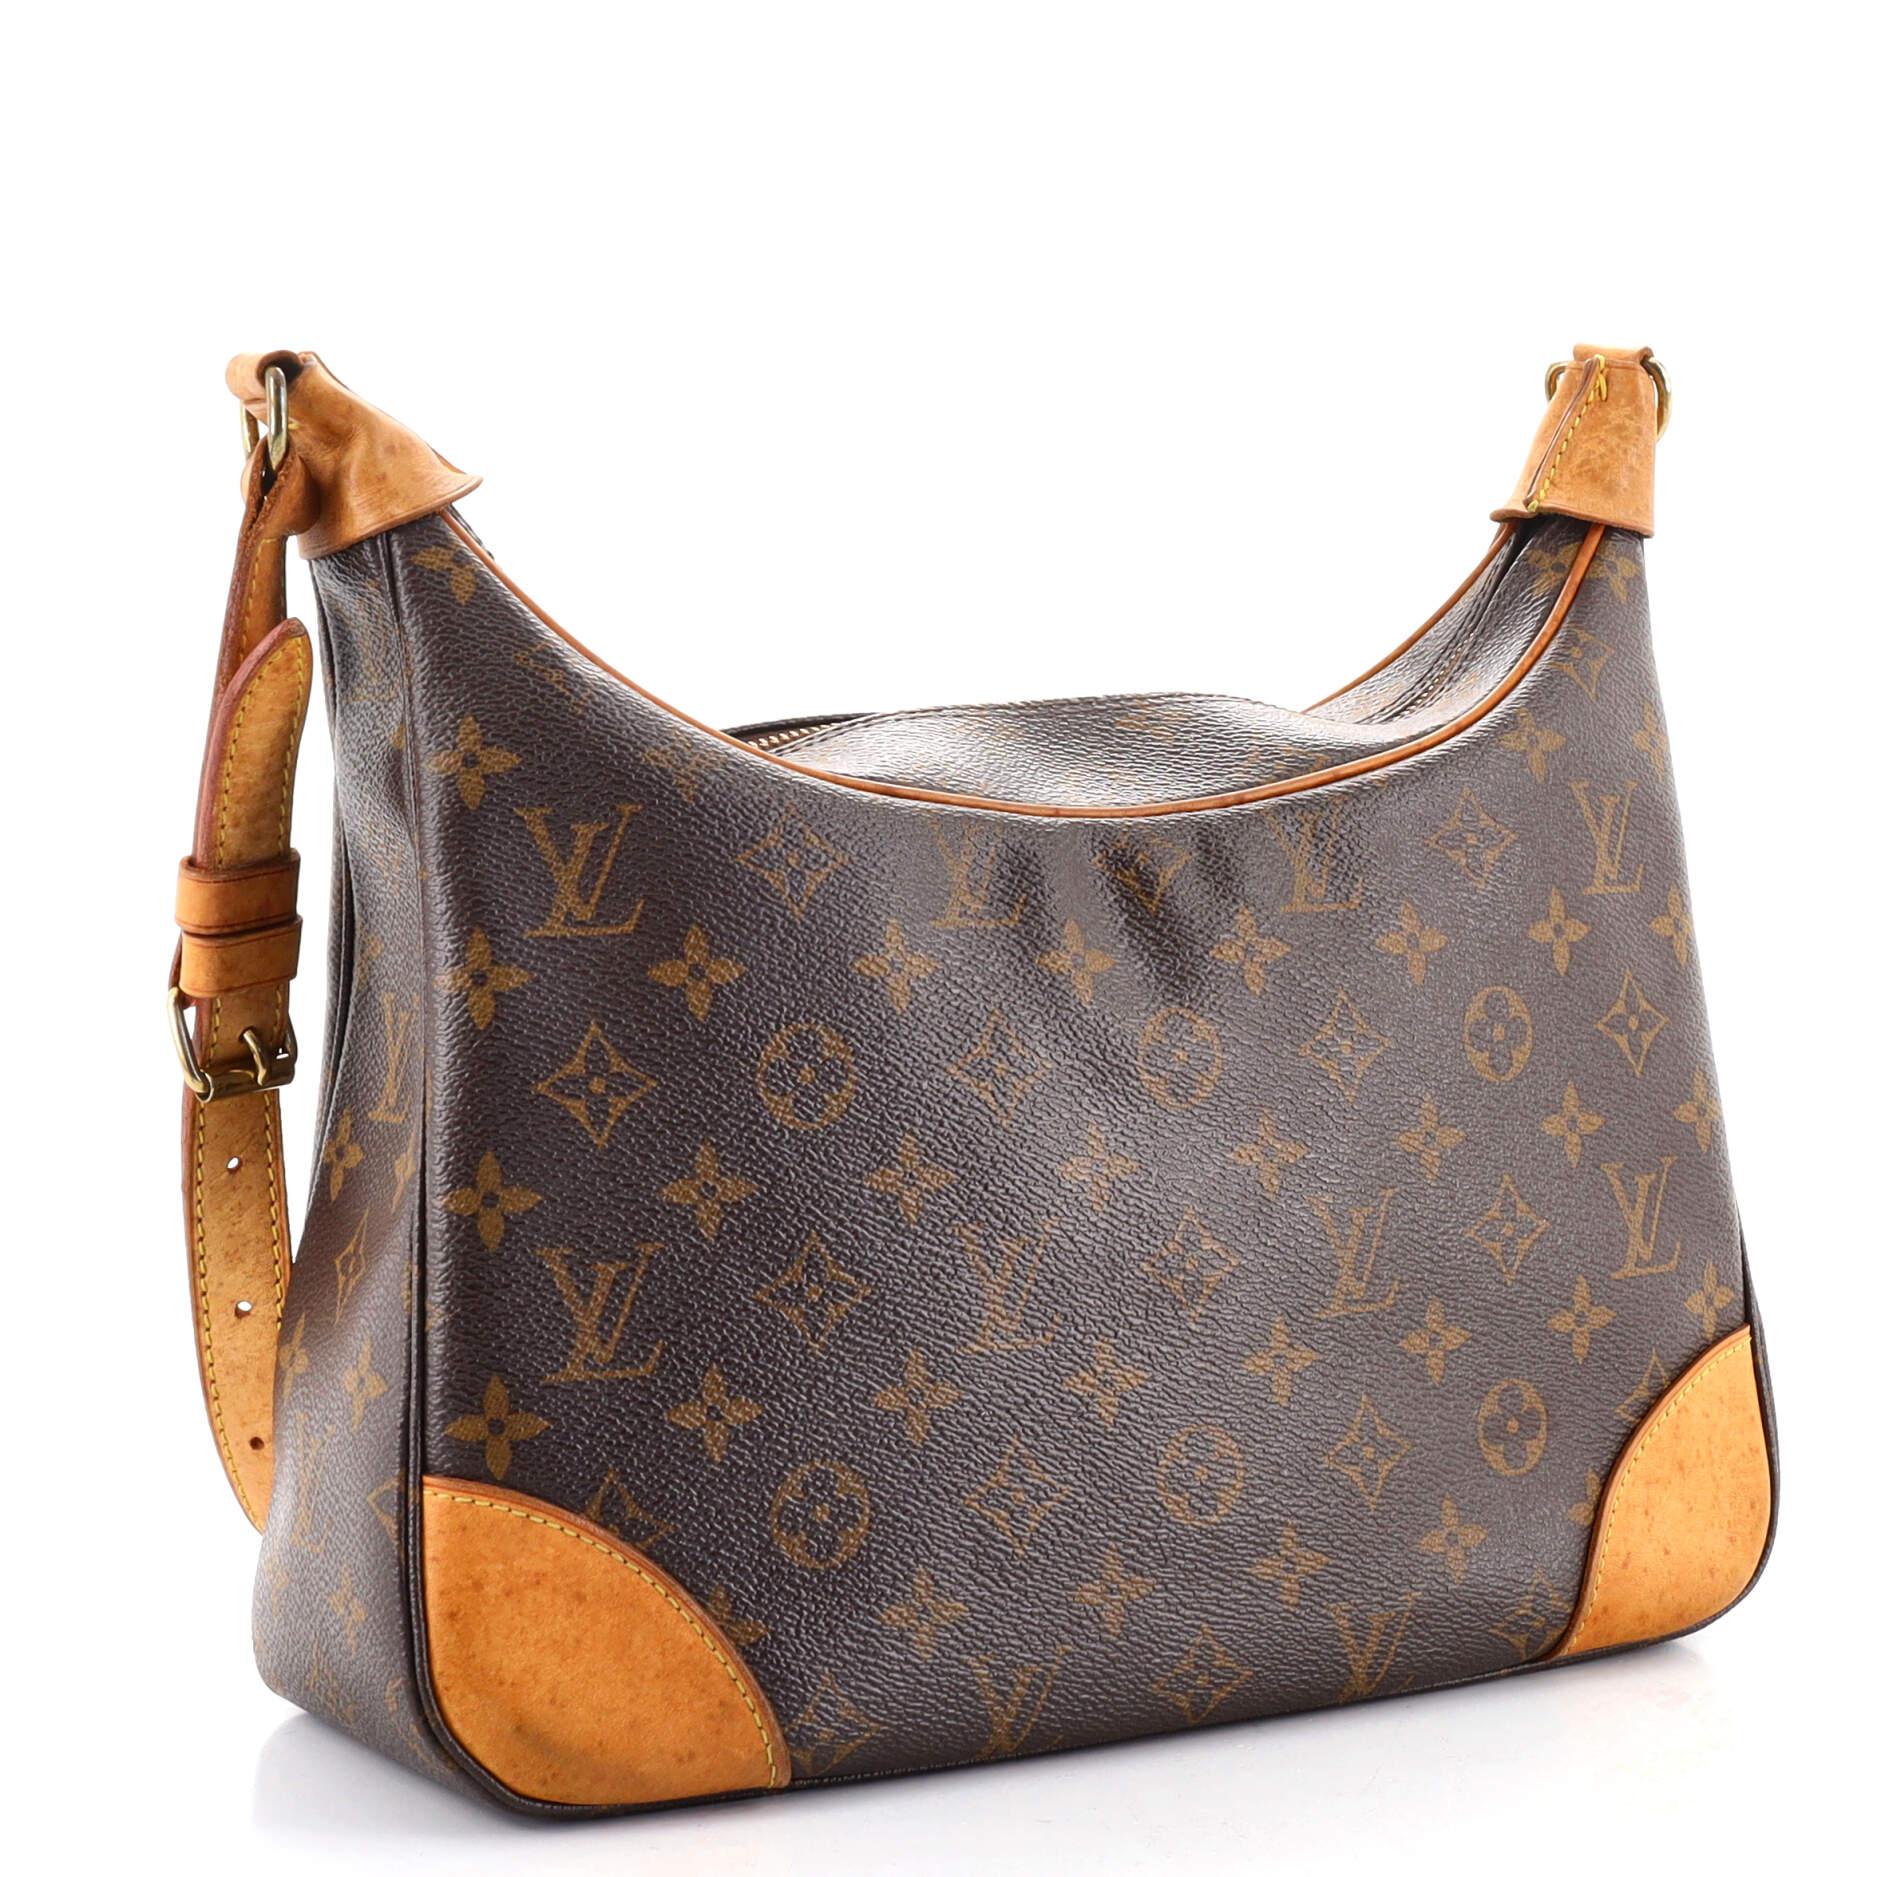 Shop for Louis Vuitton Monogram Canvas Leather Boulogne 35 cm Bag